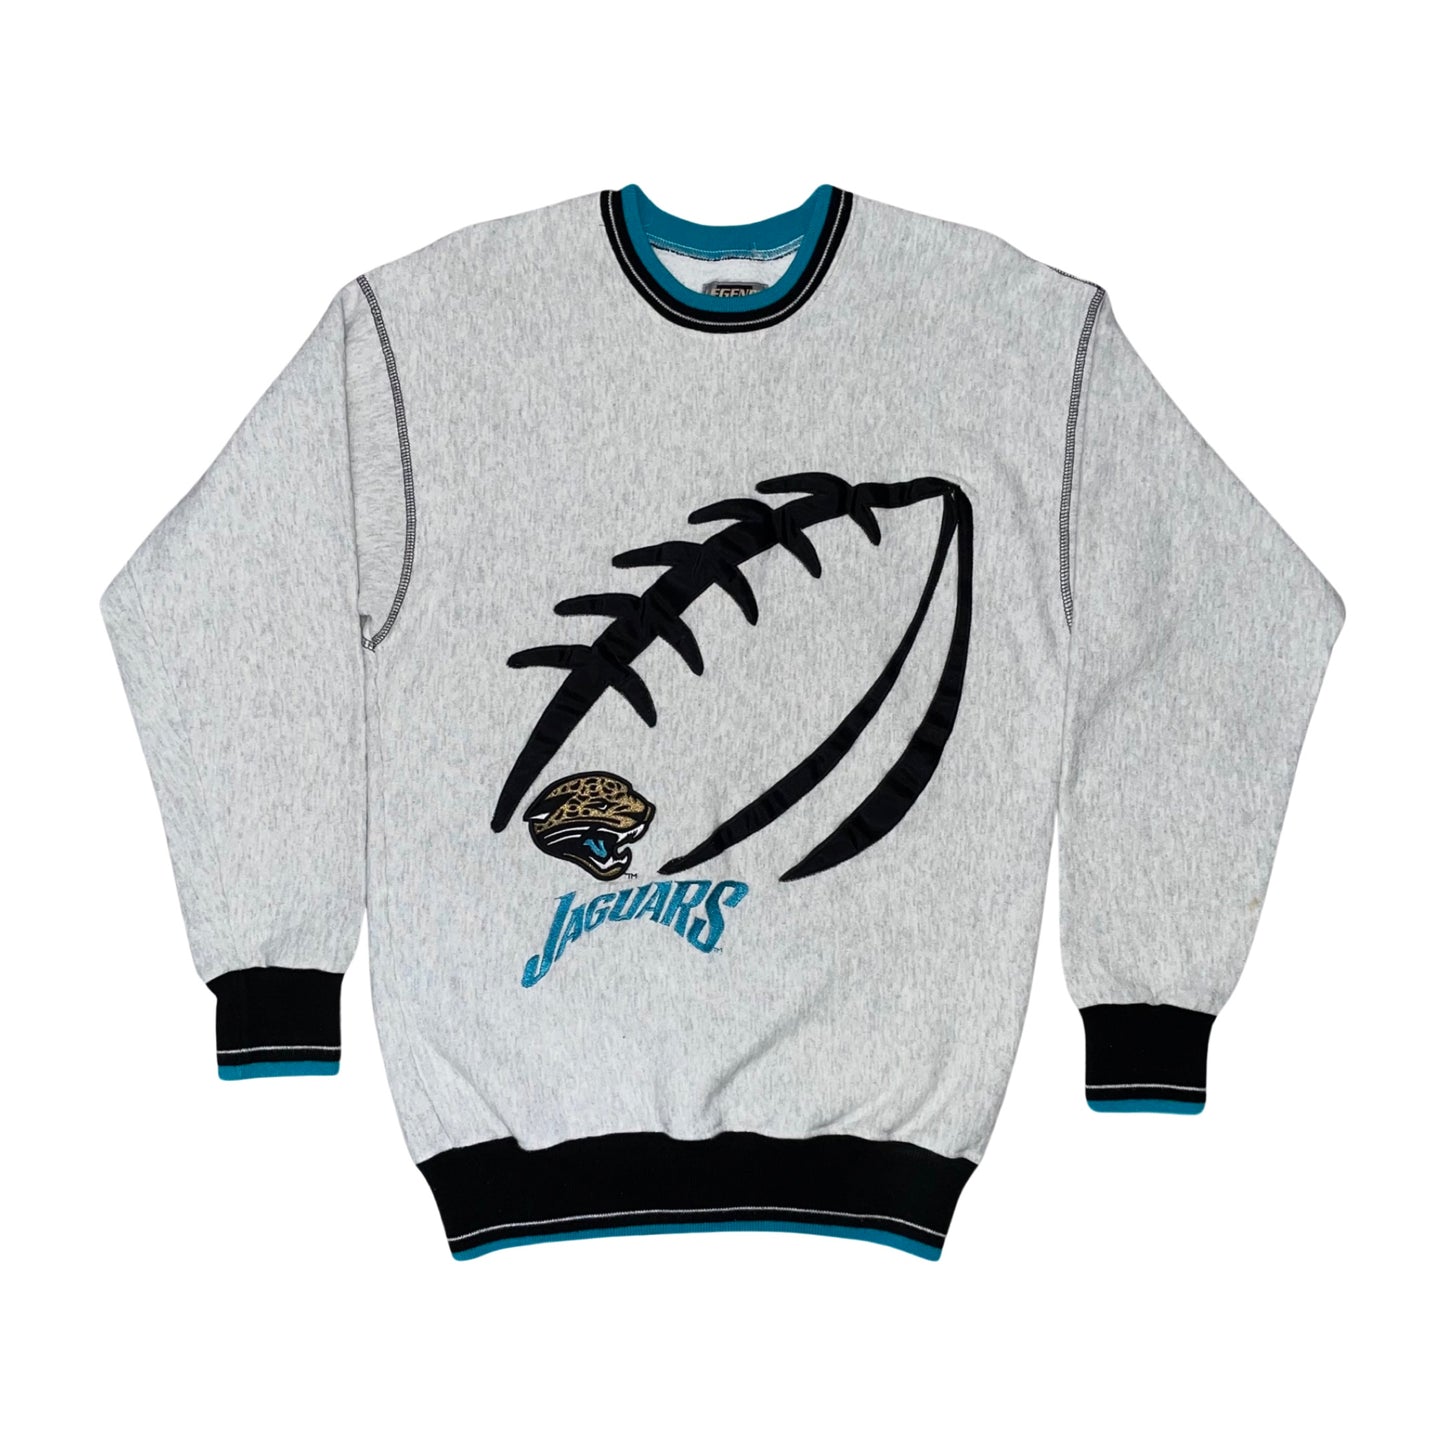 Vintage Jacksonville Jaguars Embroidered sweatshirt size SMALL